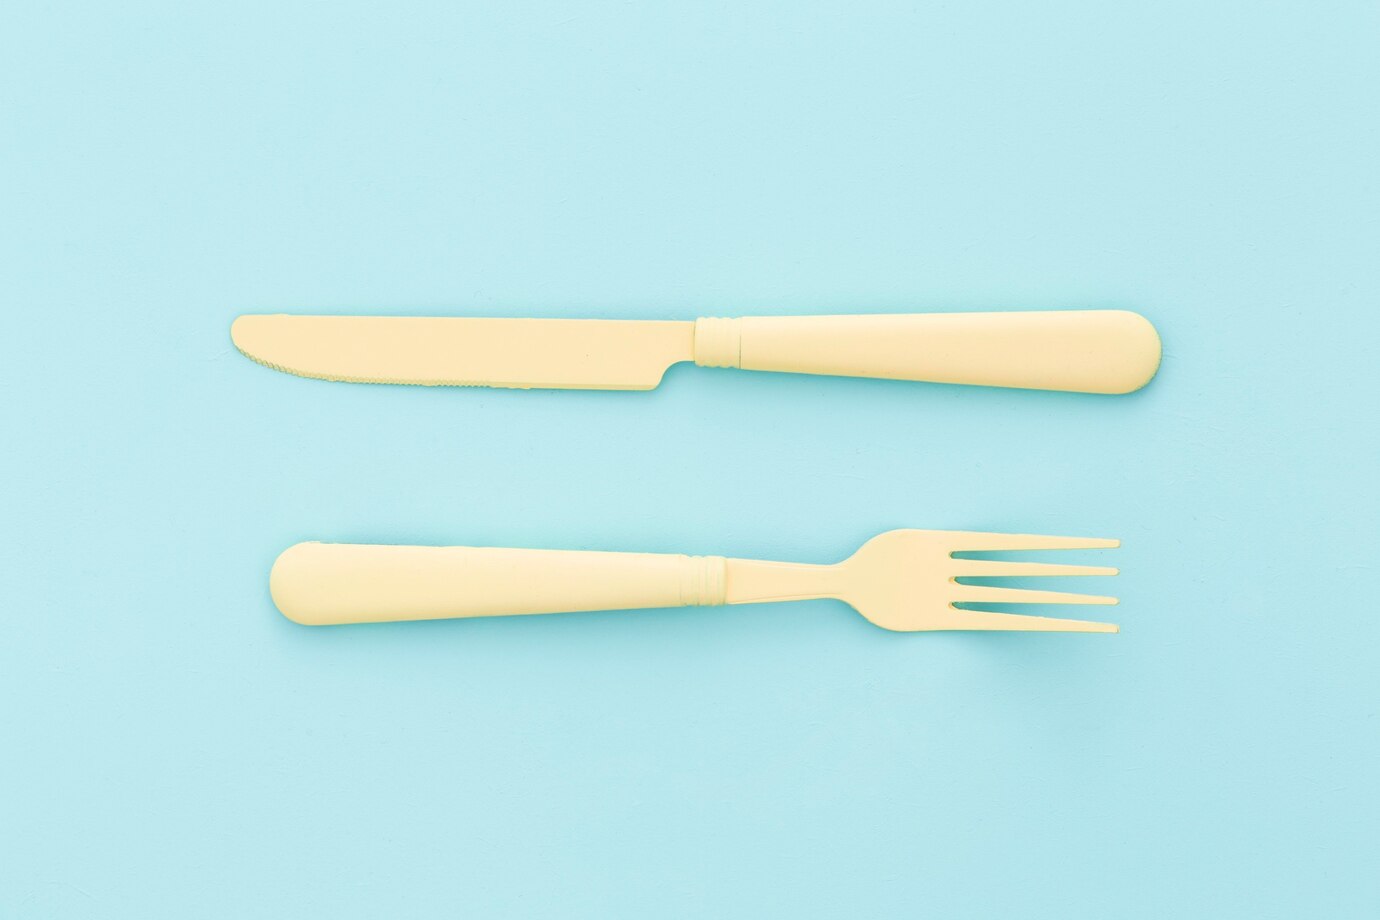 可使用兒童專用刀具，或蛋糕塑膠刀也可切質地較軟的食材